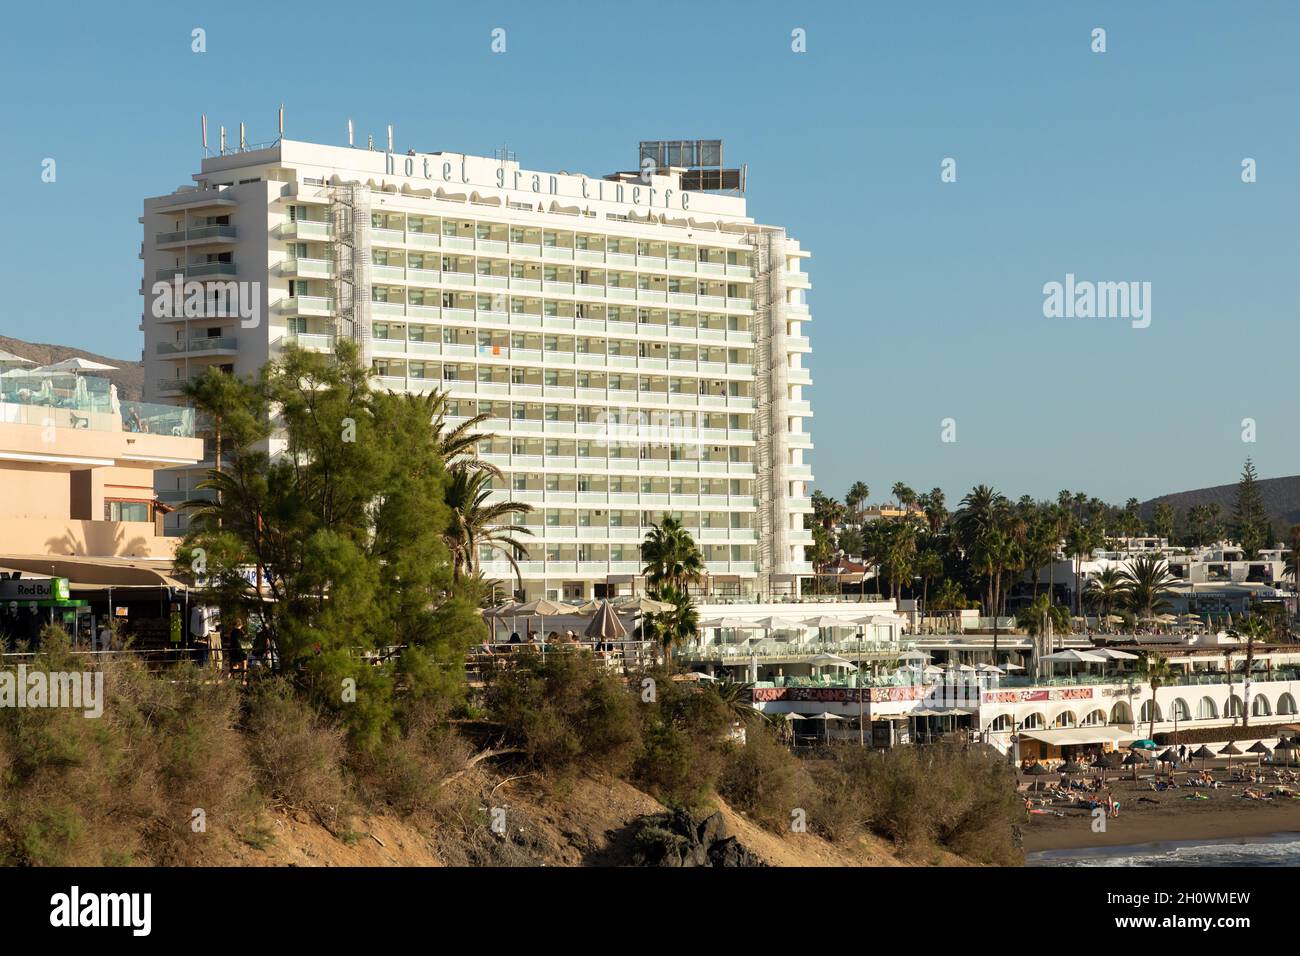 H10 Gran Tinerfe hotel in Costa Adeje, Tenerife Stock Photo